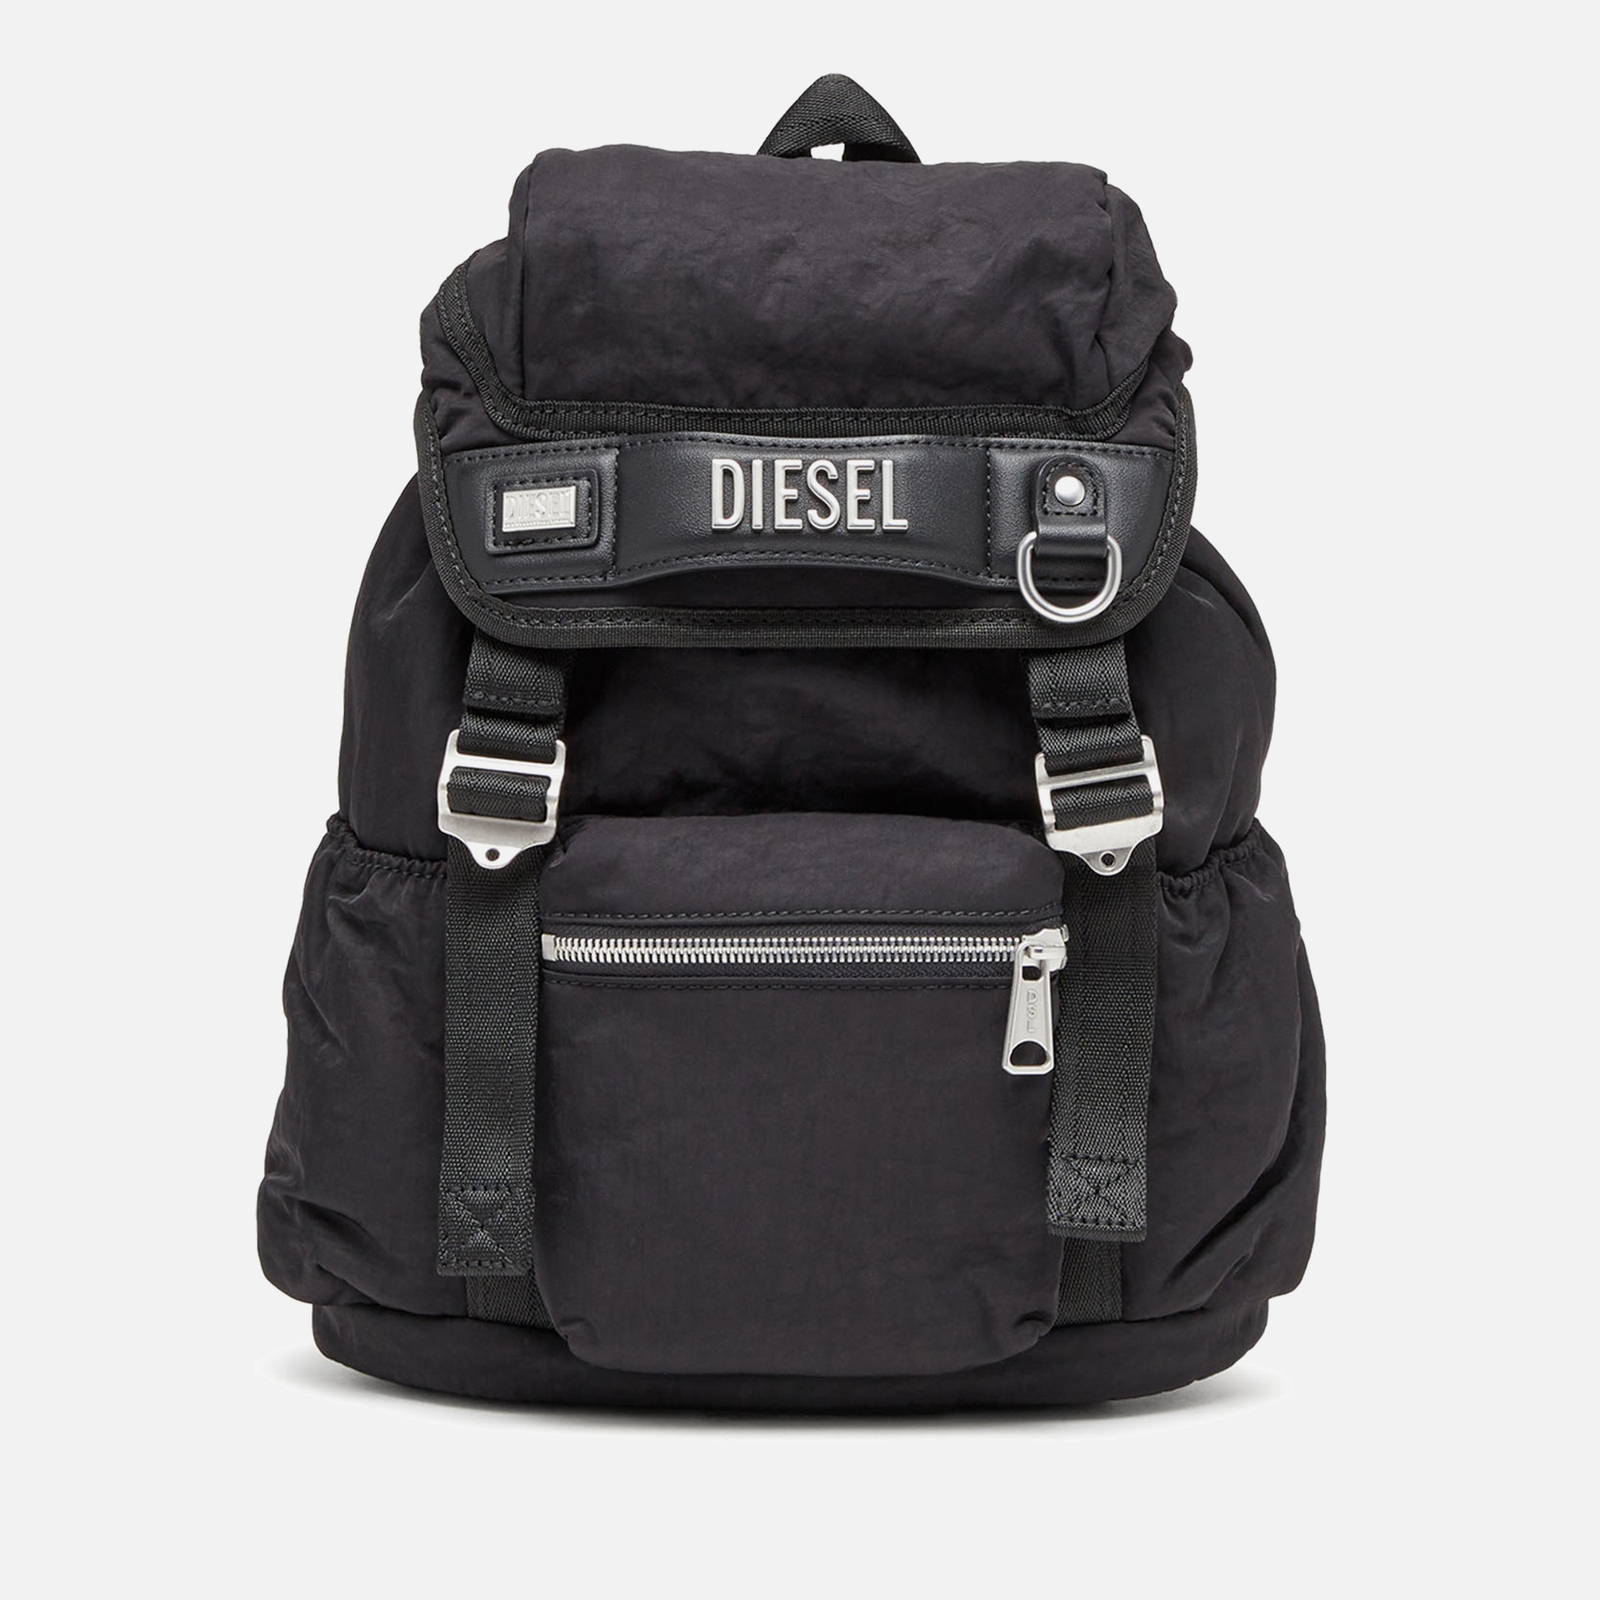 Diesel Women's Logos Backpack - Black